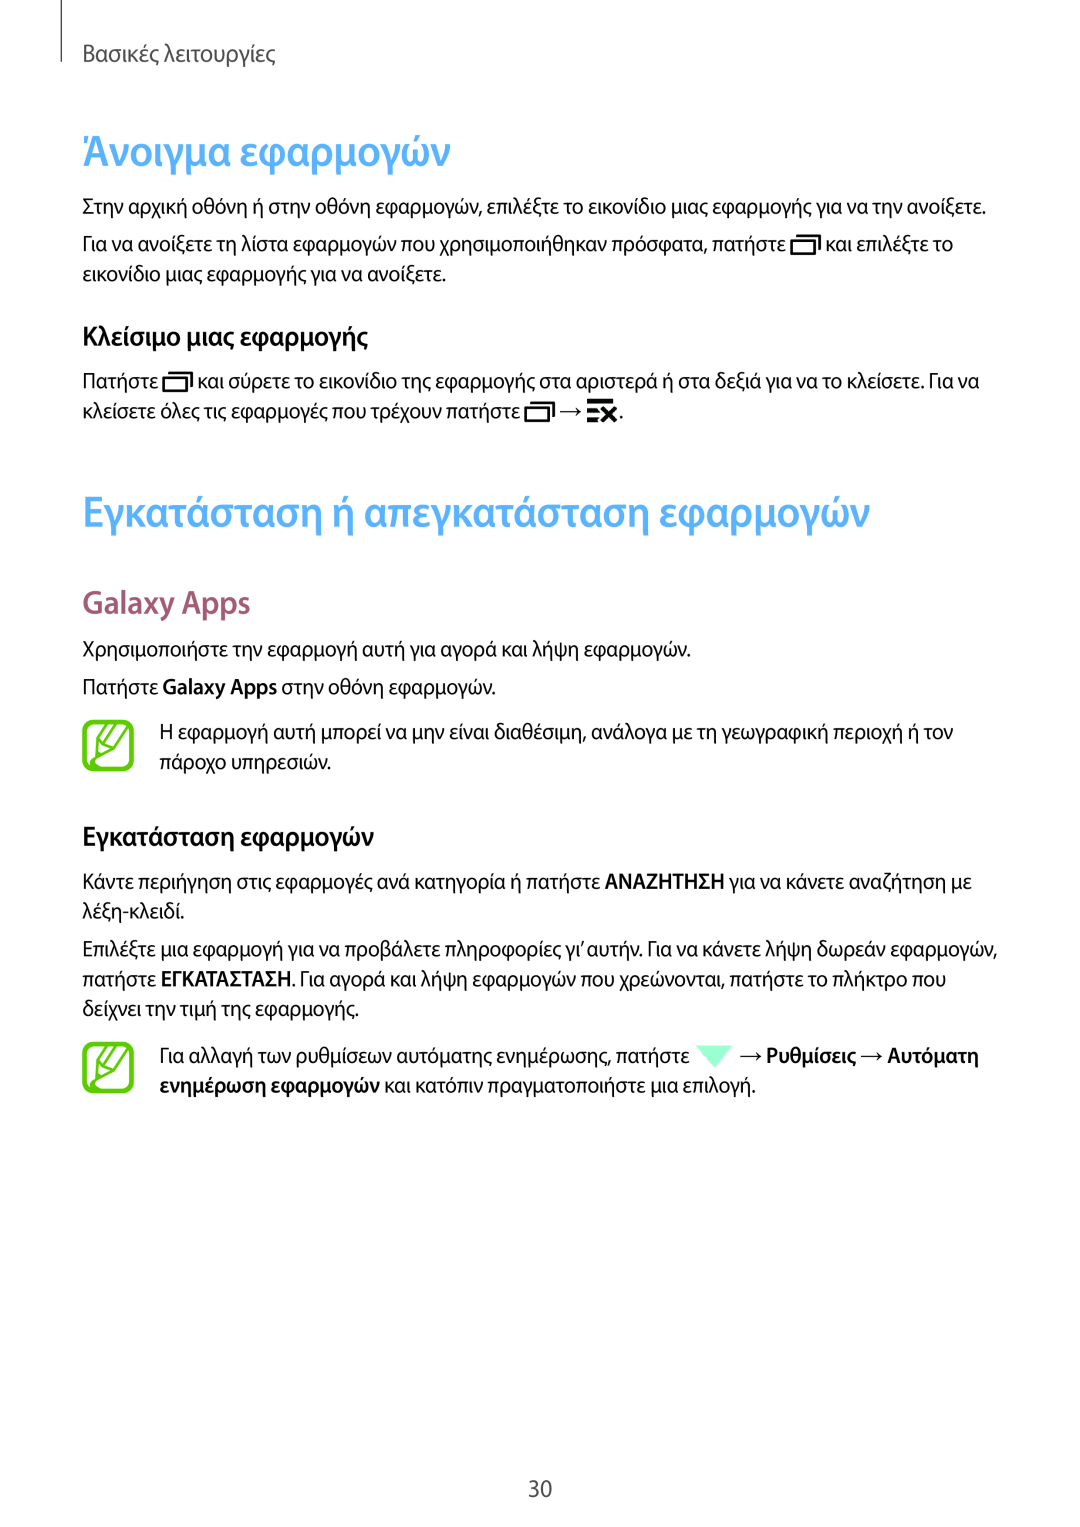 Samsung SM-T805NZWAEUR Άνοιγμα εφαρμογών, Εγκατάσταση ή απεγκατάσταση εφαρμογών, Galaxy Apps, Κλείσιμο μιας εφαρμογής 